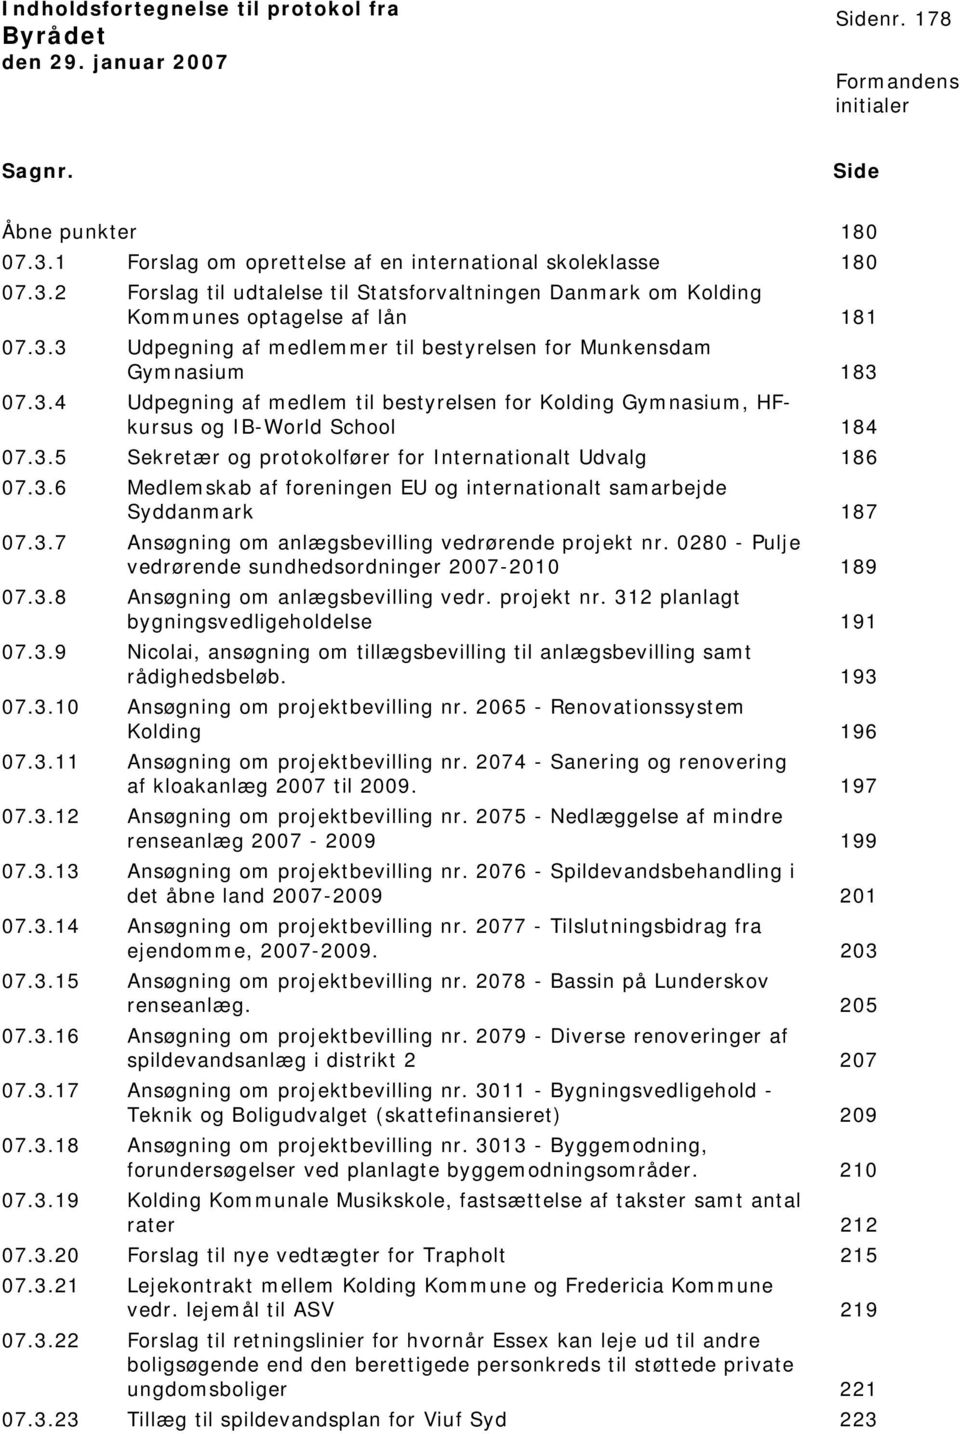 3.6 Medlemskab af foreningen EU og internionalt samarbejde Syddanmark 187 07.3.7 Ansøgning om anlægsbevilling vedrørende projekt nr. 0280 - Pulje vedrørende sundhedsordninger 2007-2010 189 07.3.8 Ansøgning om anlægsbevilling vedr.